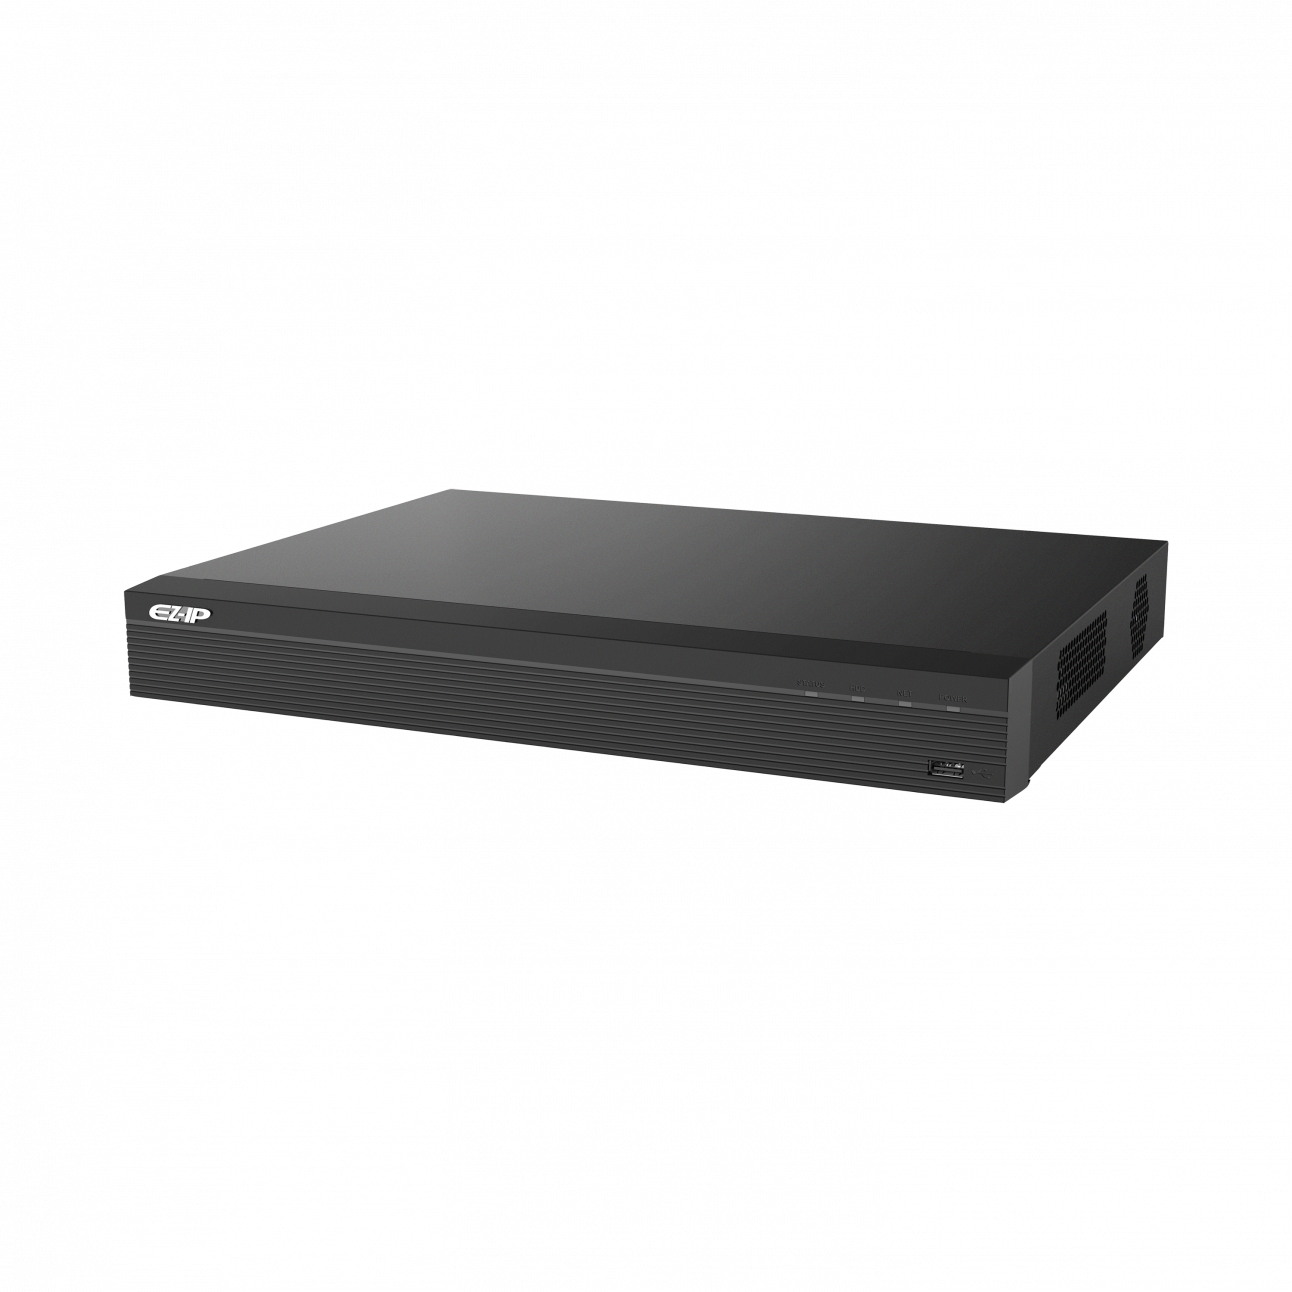 IP видеорегистратор Dahua EZ-NVR2B16 16-канальный, до 8Мп, 2HDD до 6Тб, HDMI, VGA, 2 порта USB 2.0, DC12В